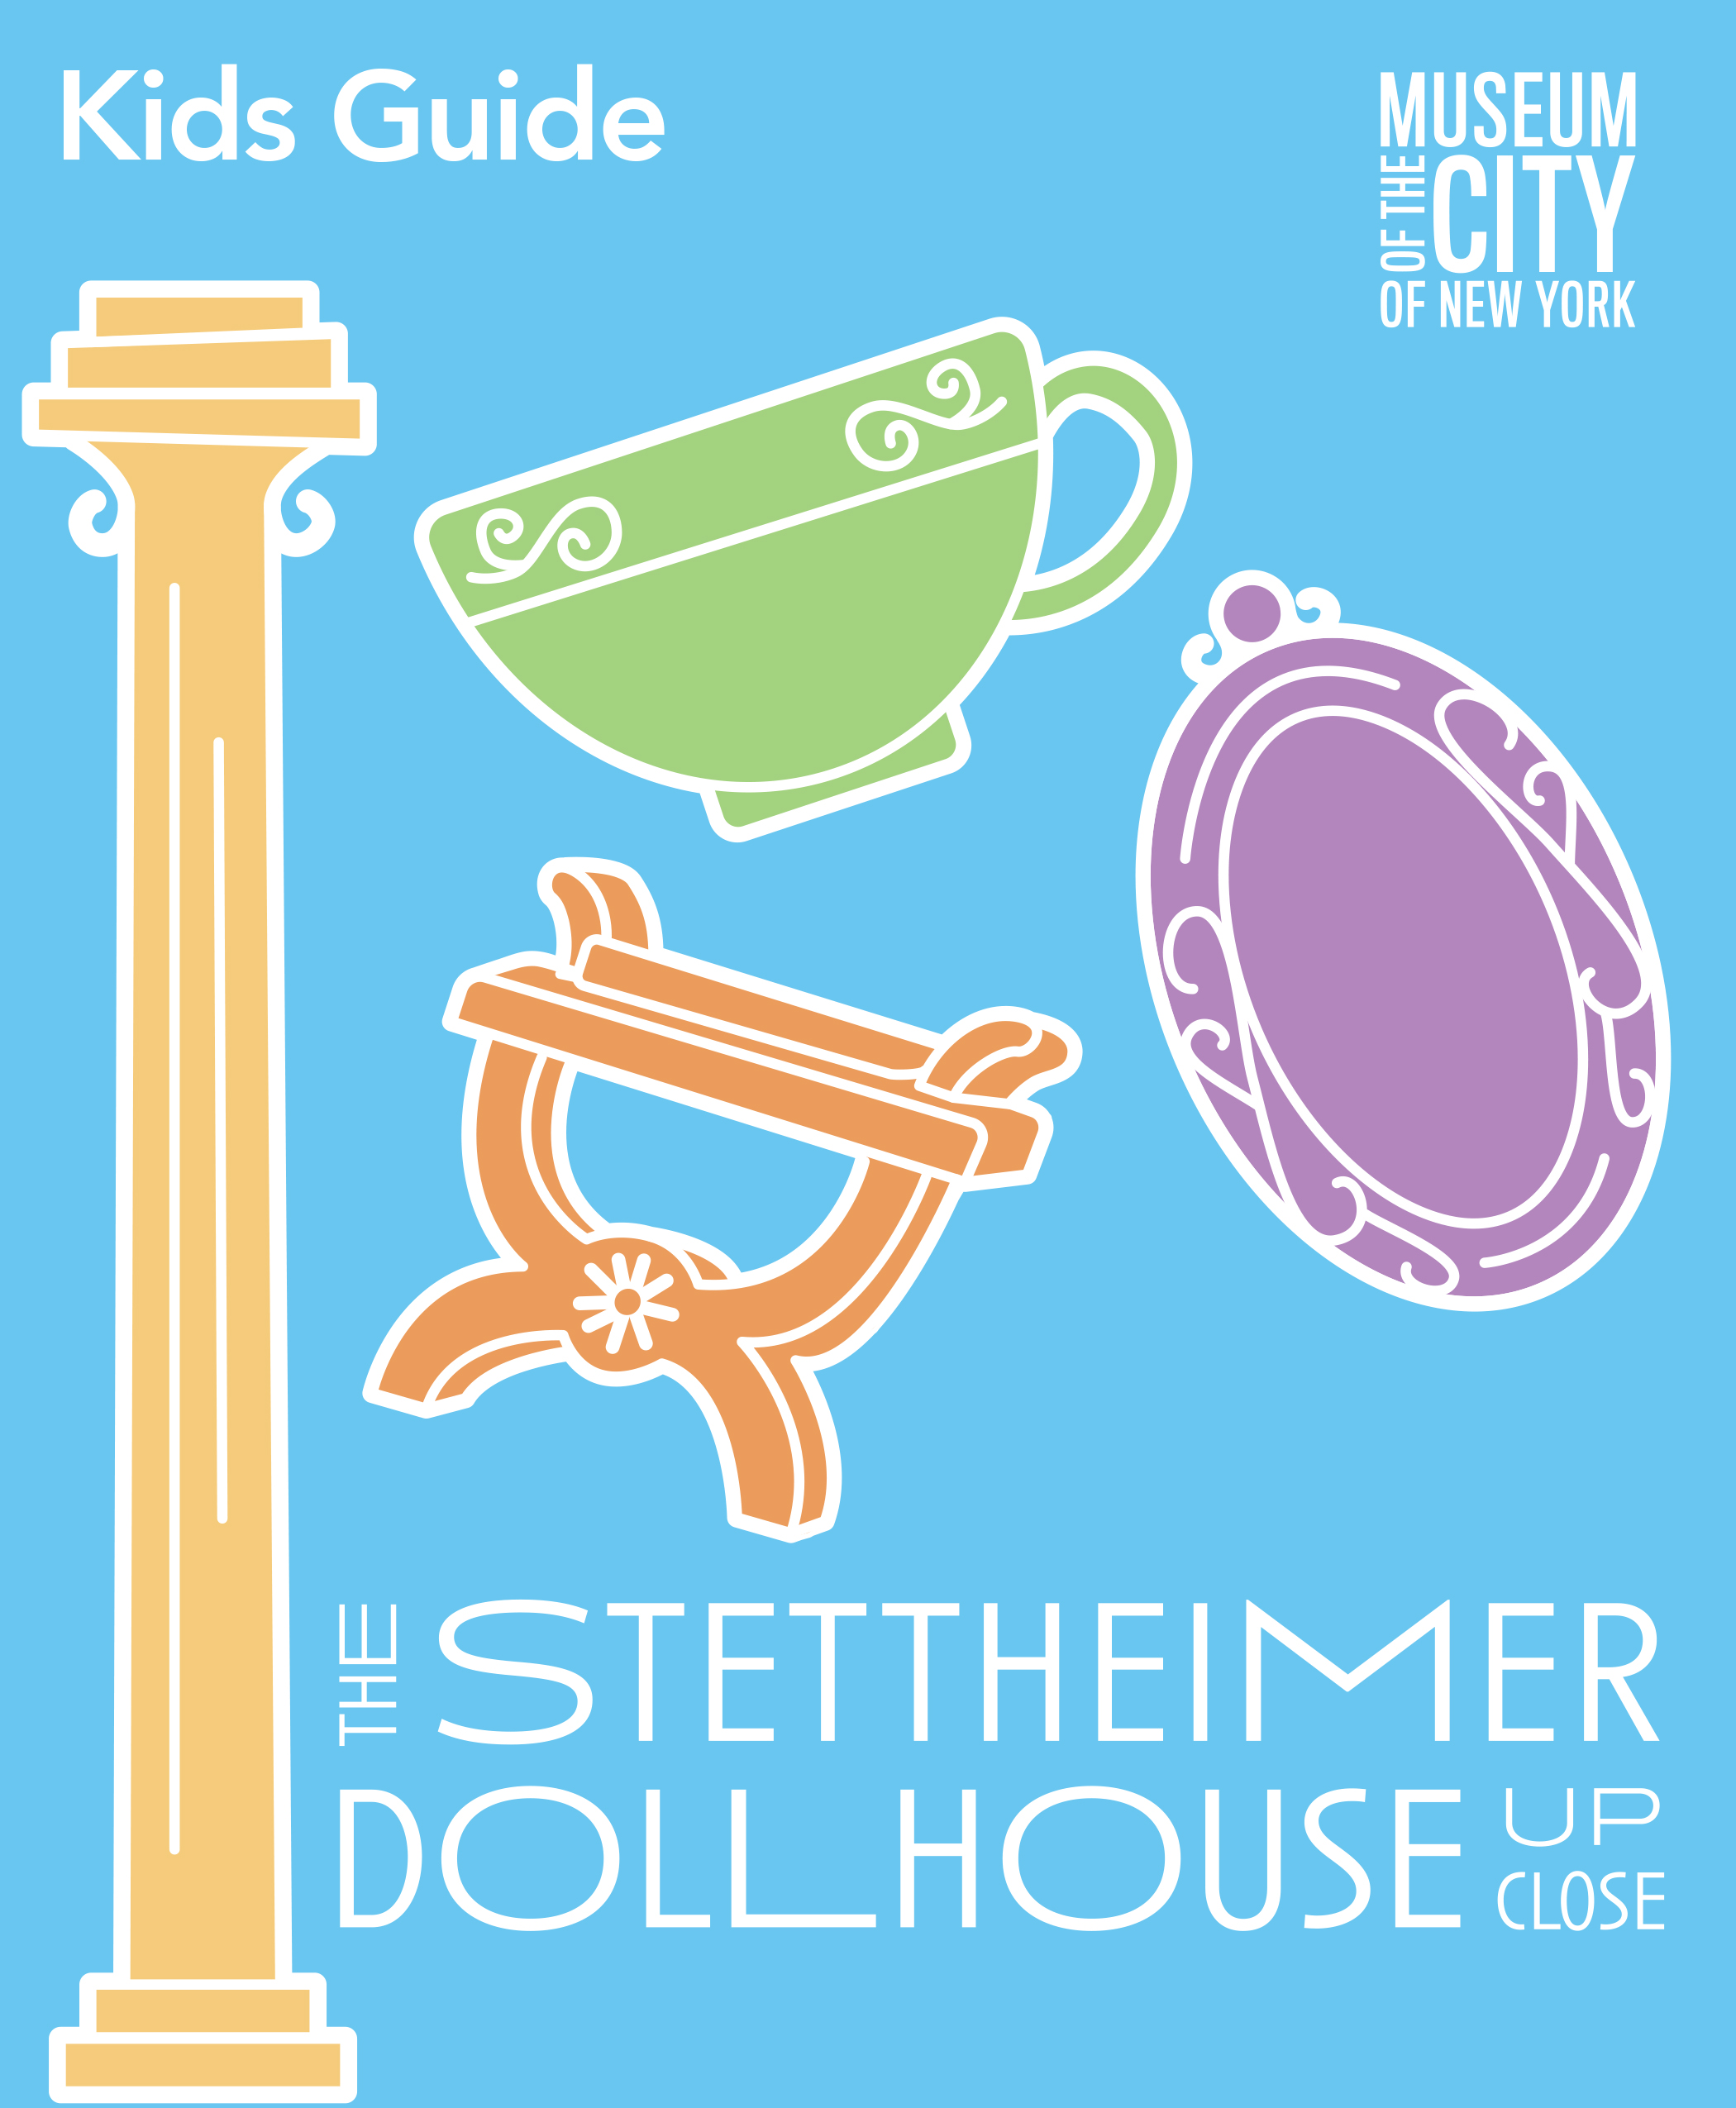 Capa de um Guia para Crianças, com um desenho gráfico de uma coluna, cadeira, xícara e prato da Stettheimer Dollhouse